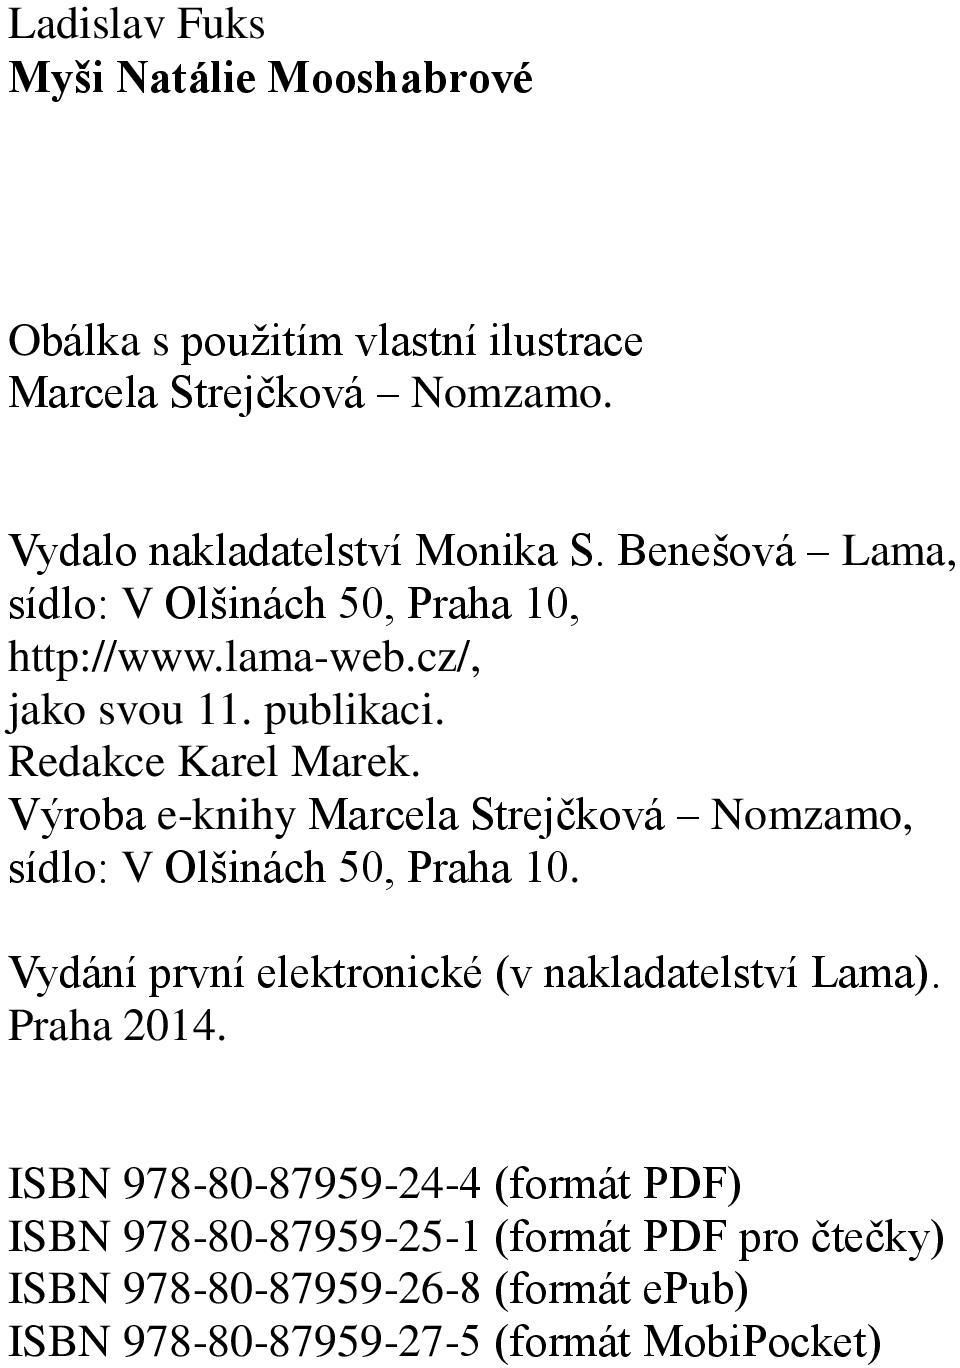 Výroba e-knihy Marcela Strejčková Nomzamo, sídlo: V Olšinách 50, Praha 10. Vydání první elektronické (v nakladatelství Lama). Praha 2014.